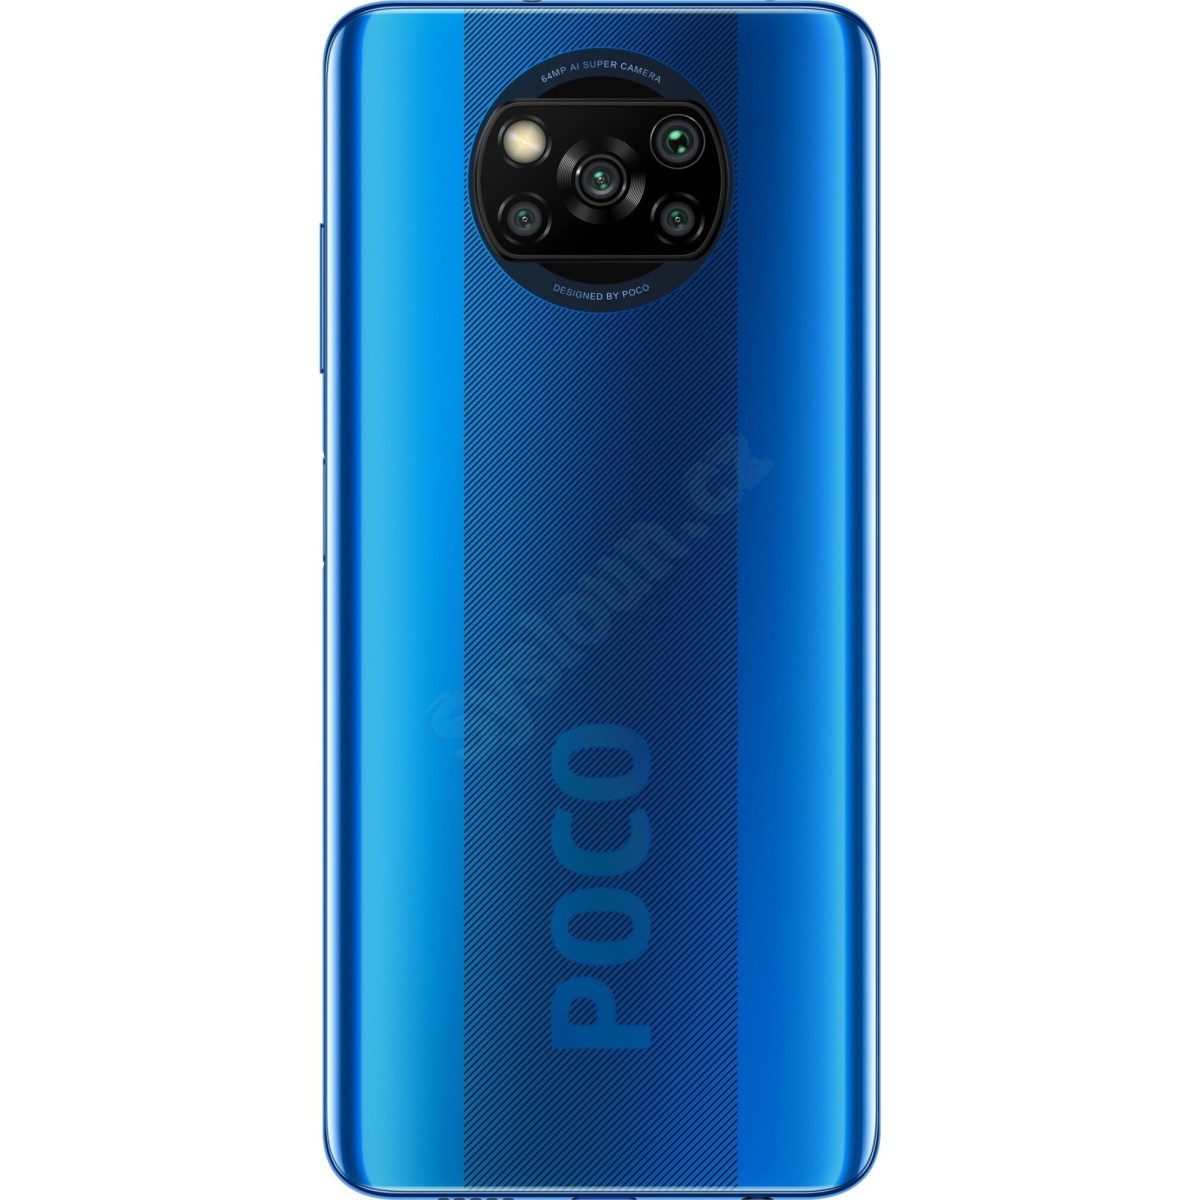 Xiaomi Poco X3